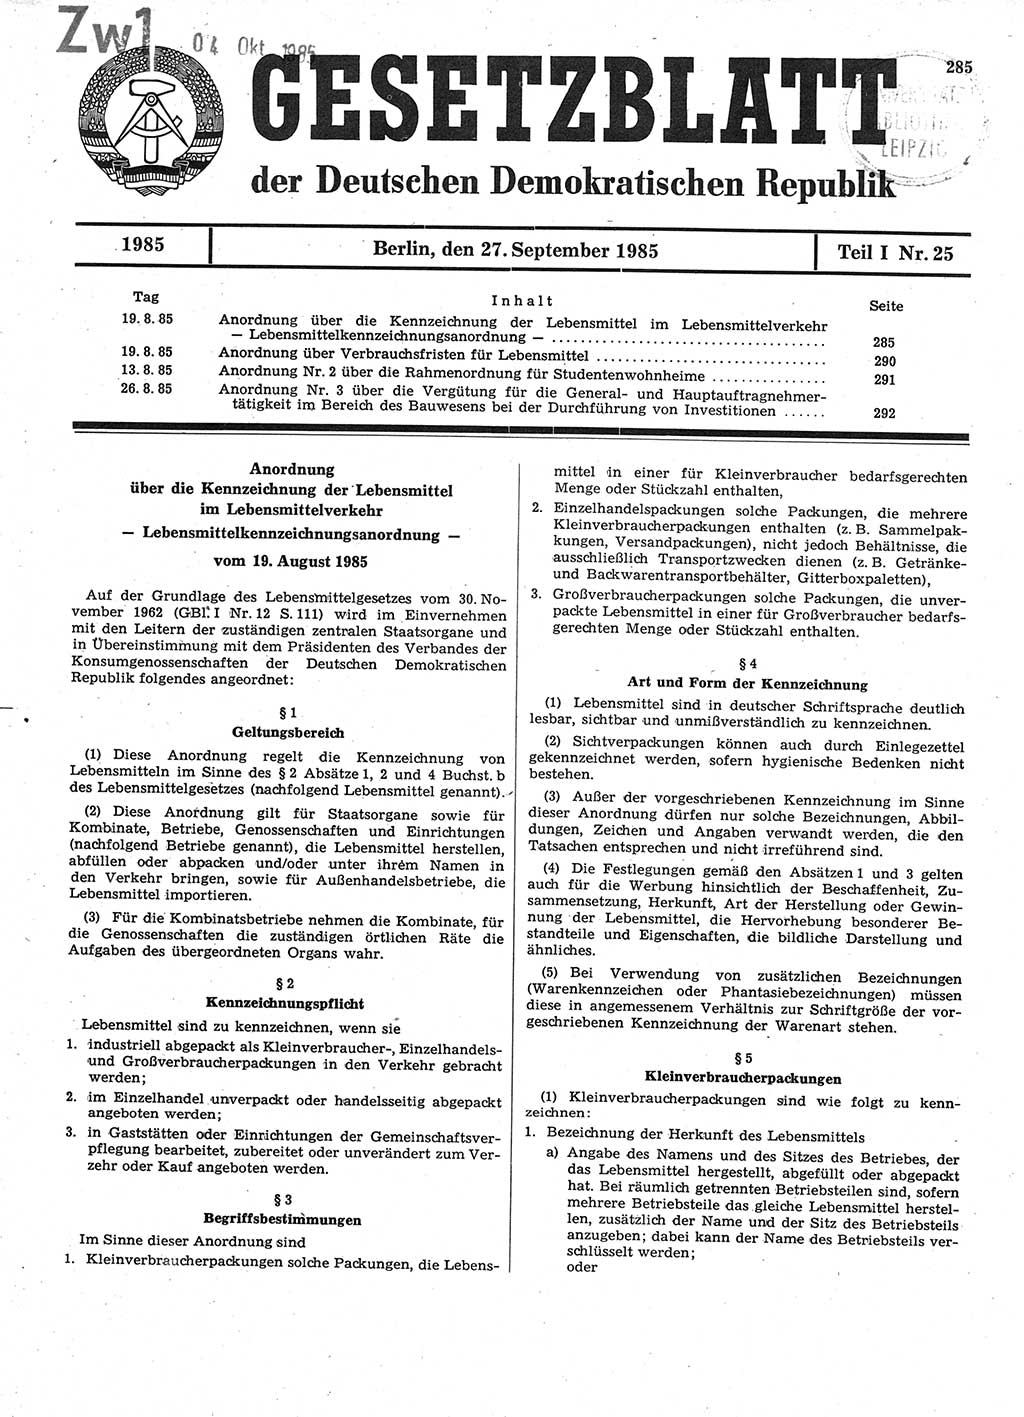 Gesetzblatt (GBl.) der Deutschen Demokratischen Republik (DDR) Teil Ⅰ 1985, Seite 285 (GBl. DDR Ⅰ 1985, S. 285)